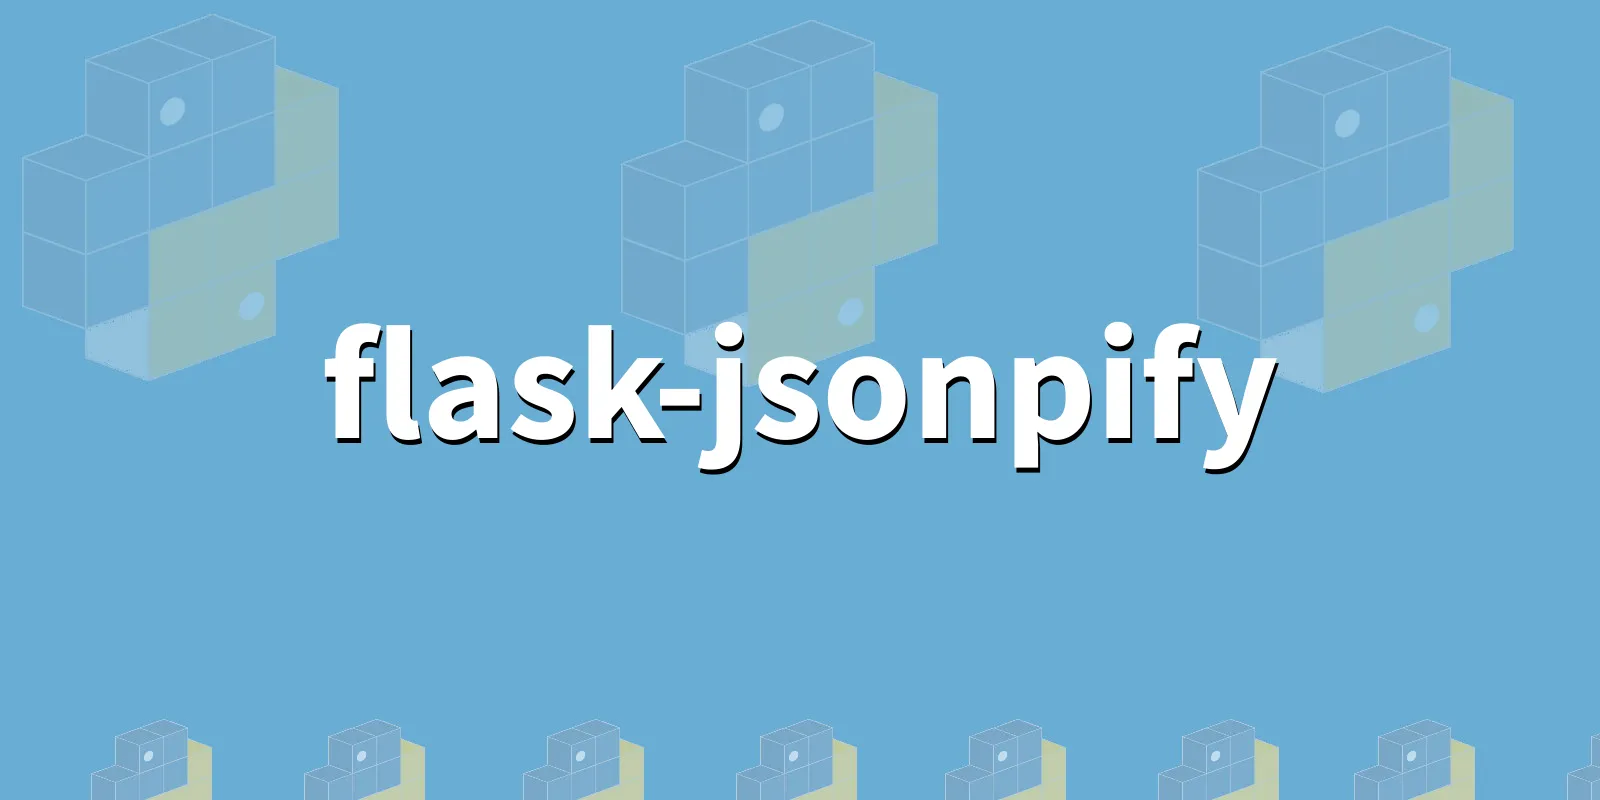 /pkg/f/flask-jsonpify/flask-jsonpify-banner.webp